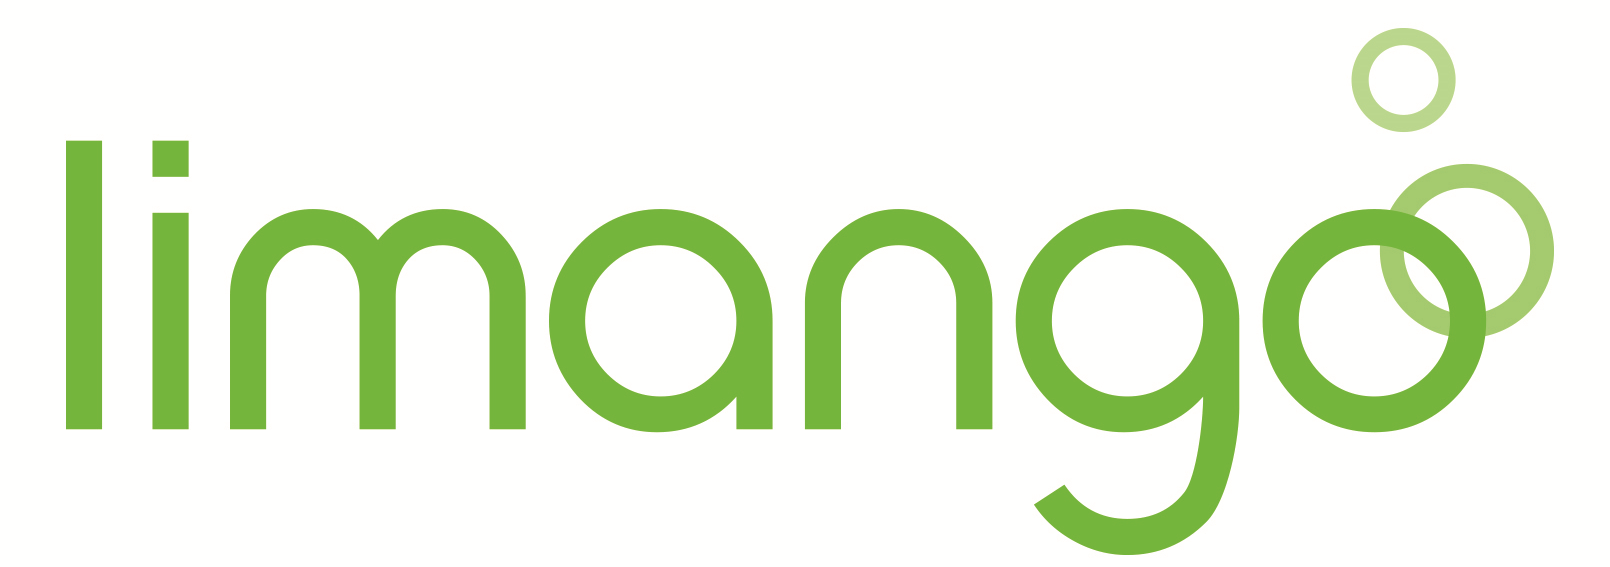 Limango_Logo